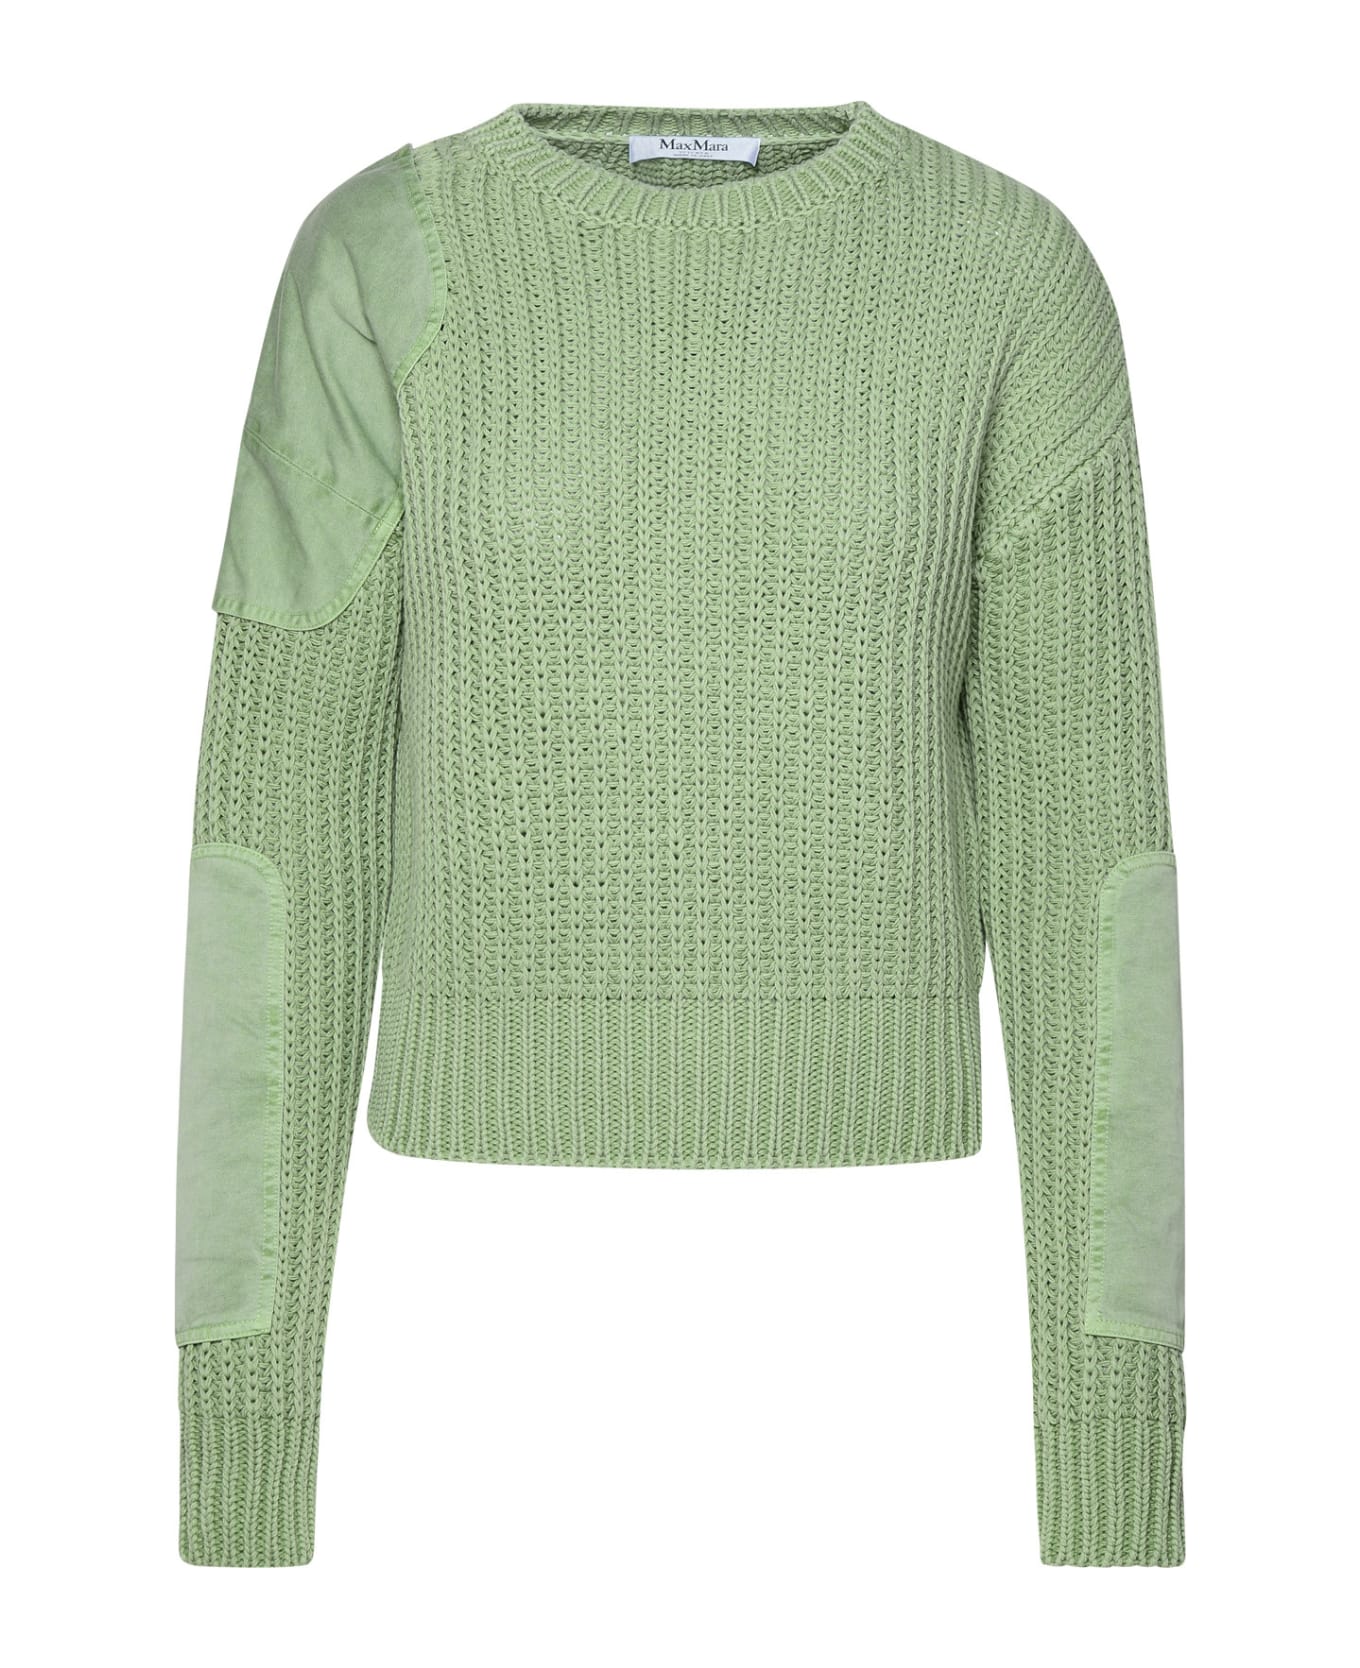 Max Mara 'abisso1234' Sage Green Cotton Sweater - Green